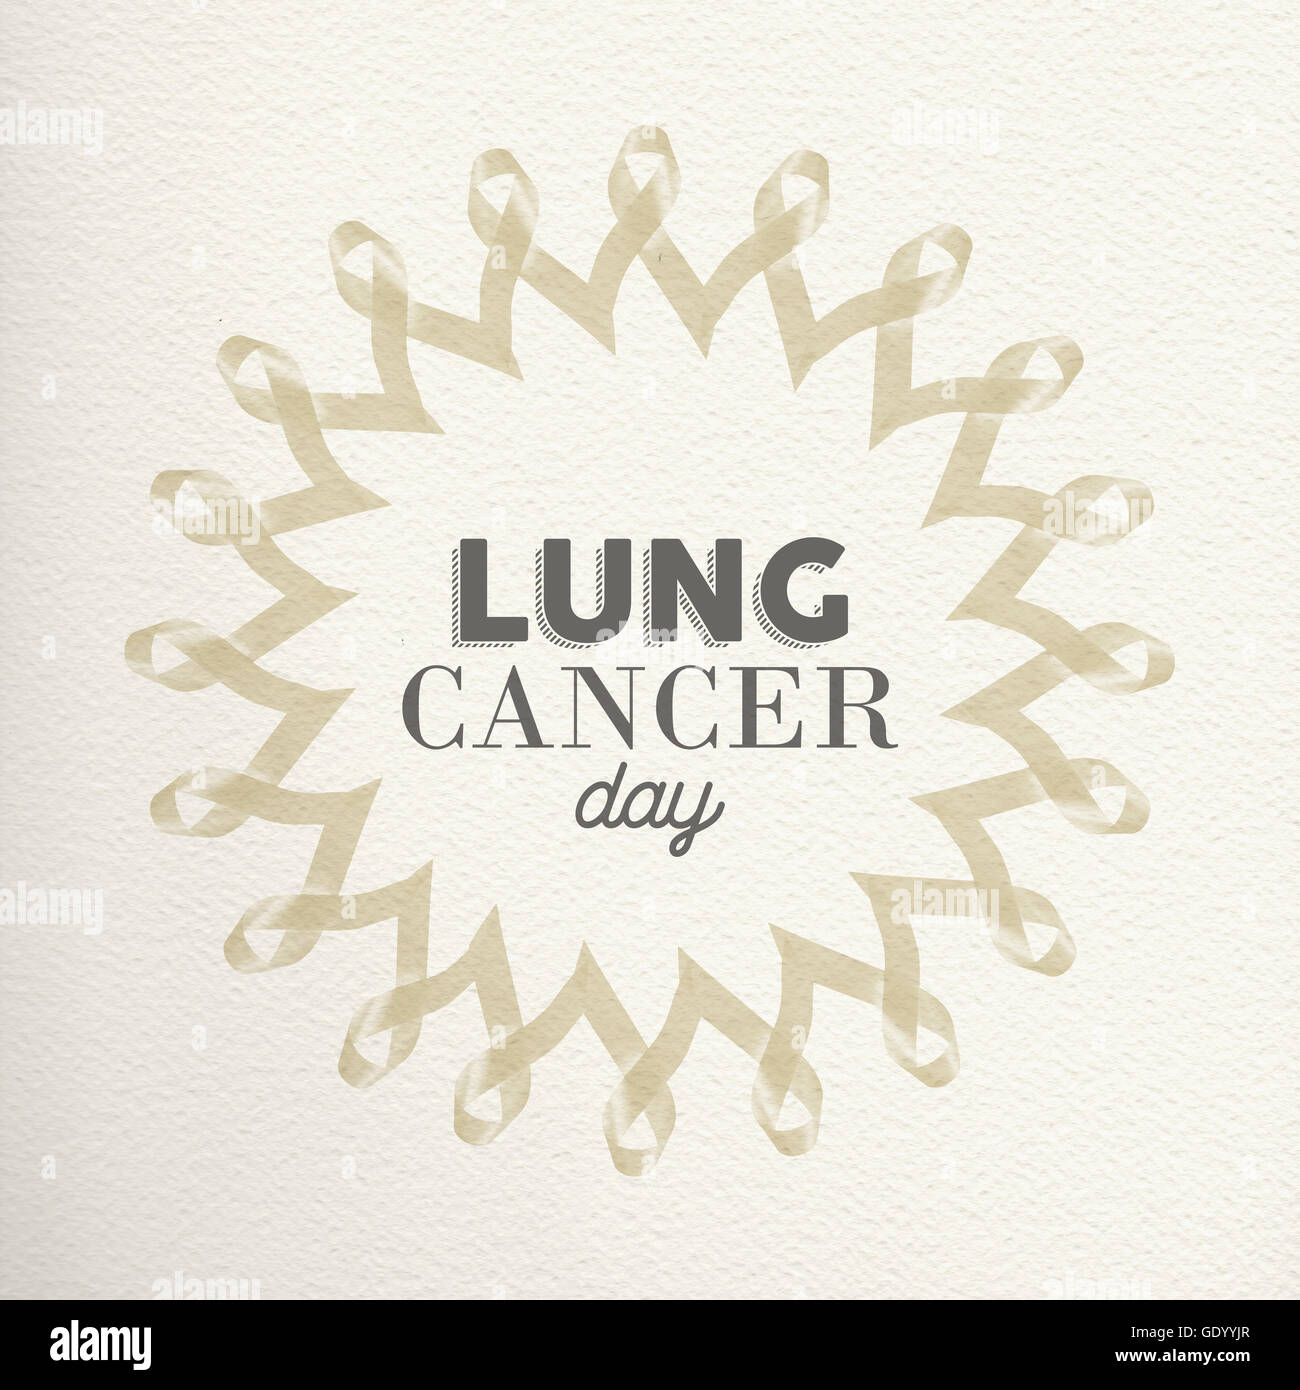 Il cancro del polmone giorno mandala design realizzato di nastri di colore bianco con la tipografia per supporto di sensibilizzazione. Foto Stock